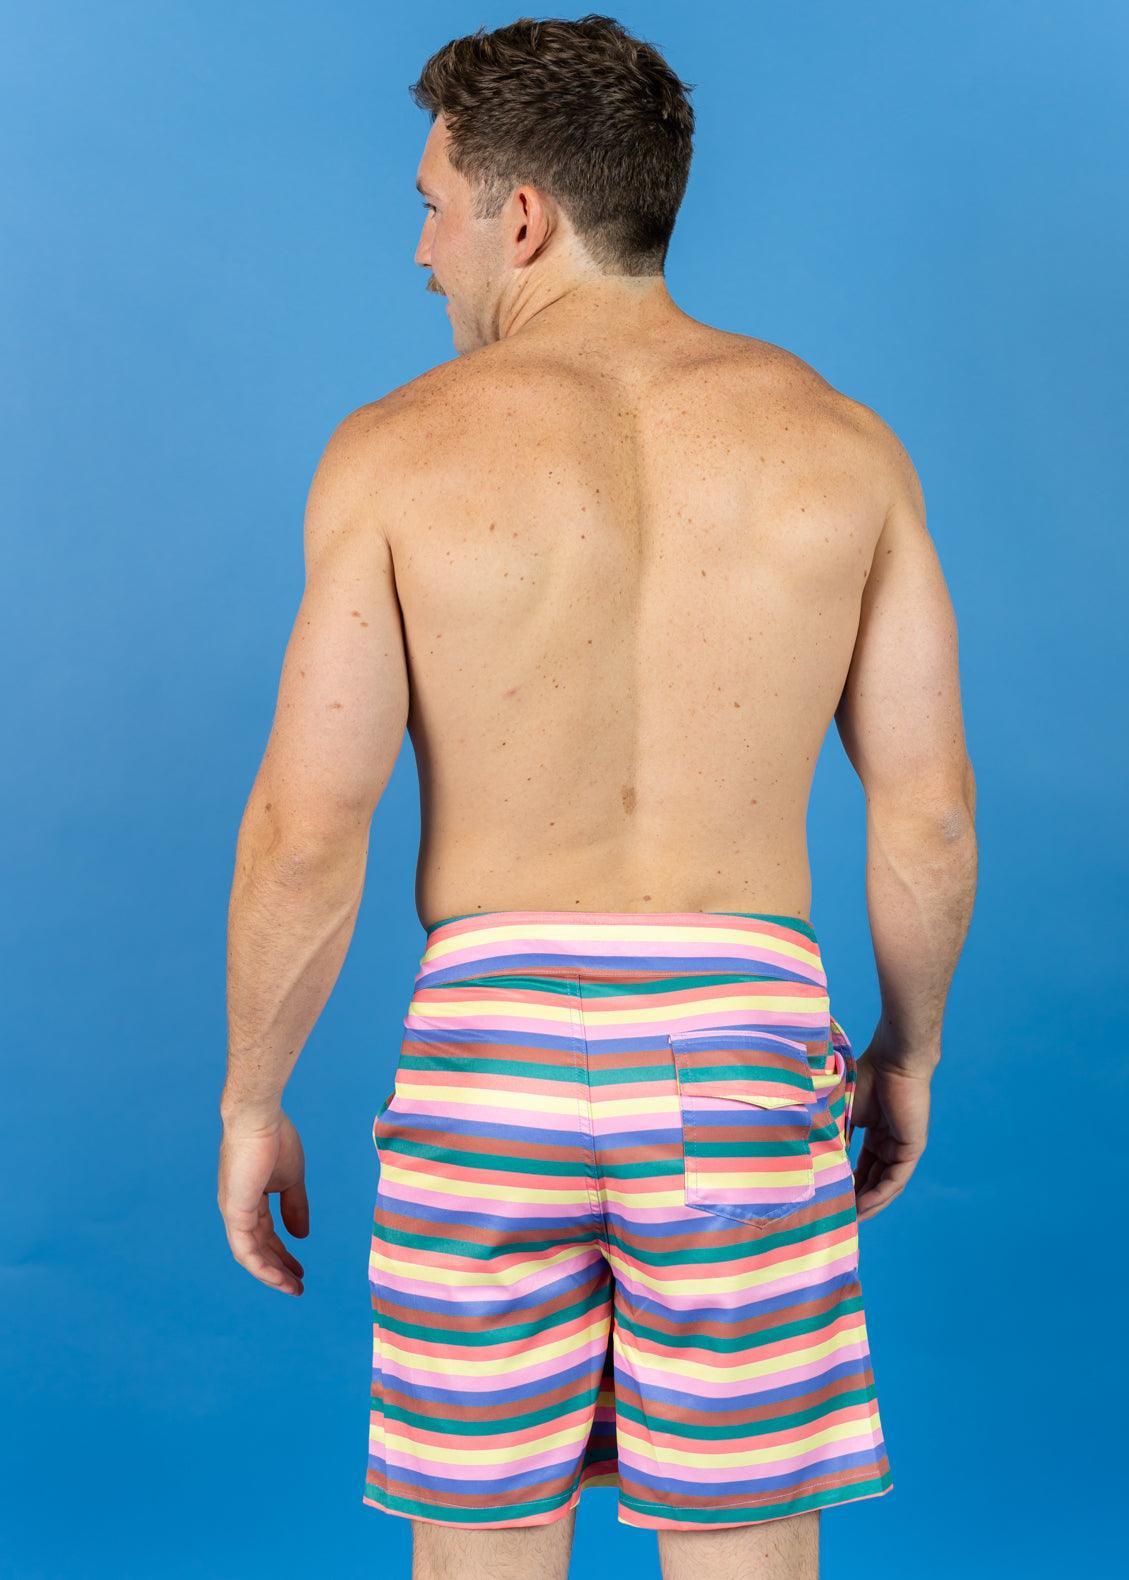 Mens Swimsuit - Trunks - Retro Stripe